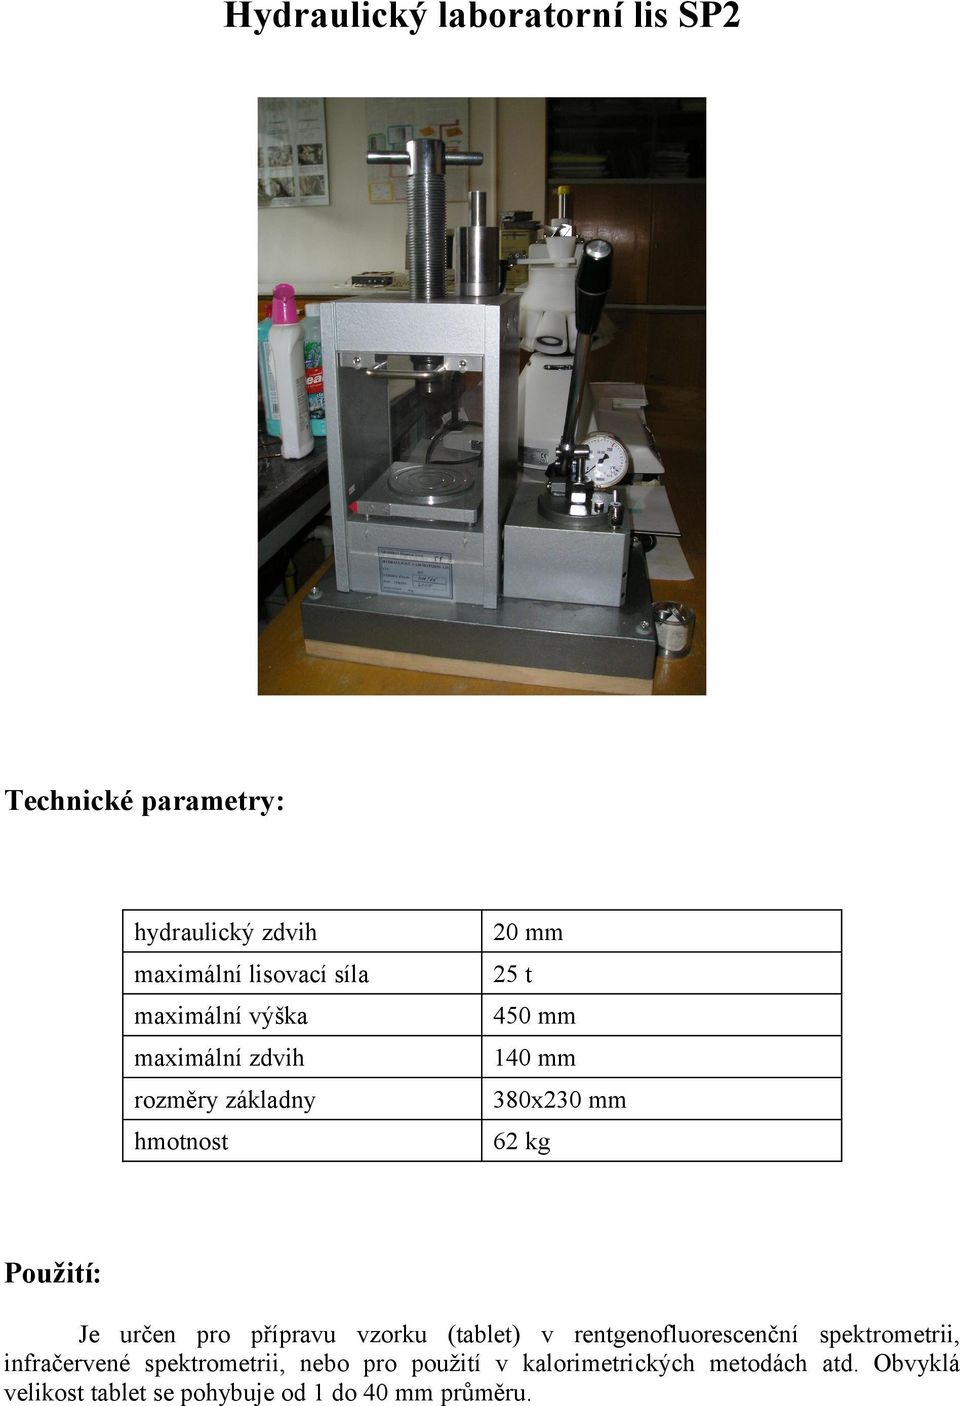 vzorku (tablet) v rentgenofluorescenční spektrometrii, infračervené spektrometrii, nebo pro